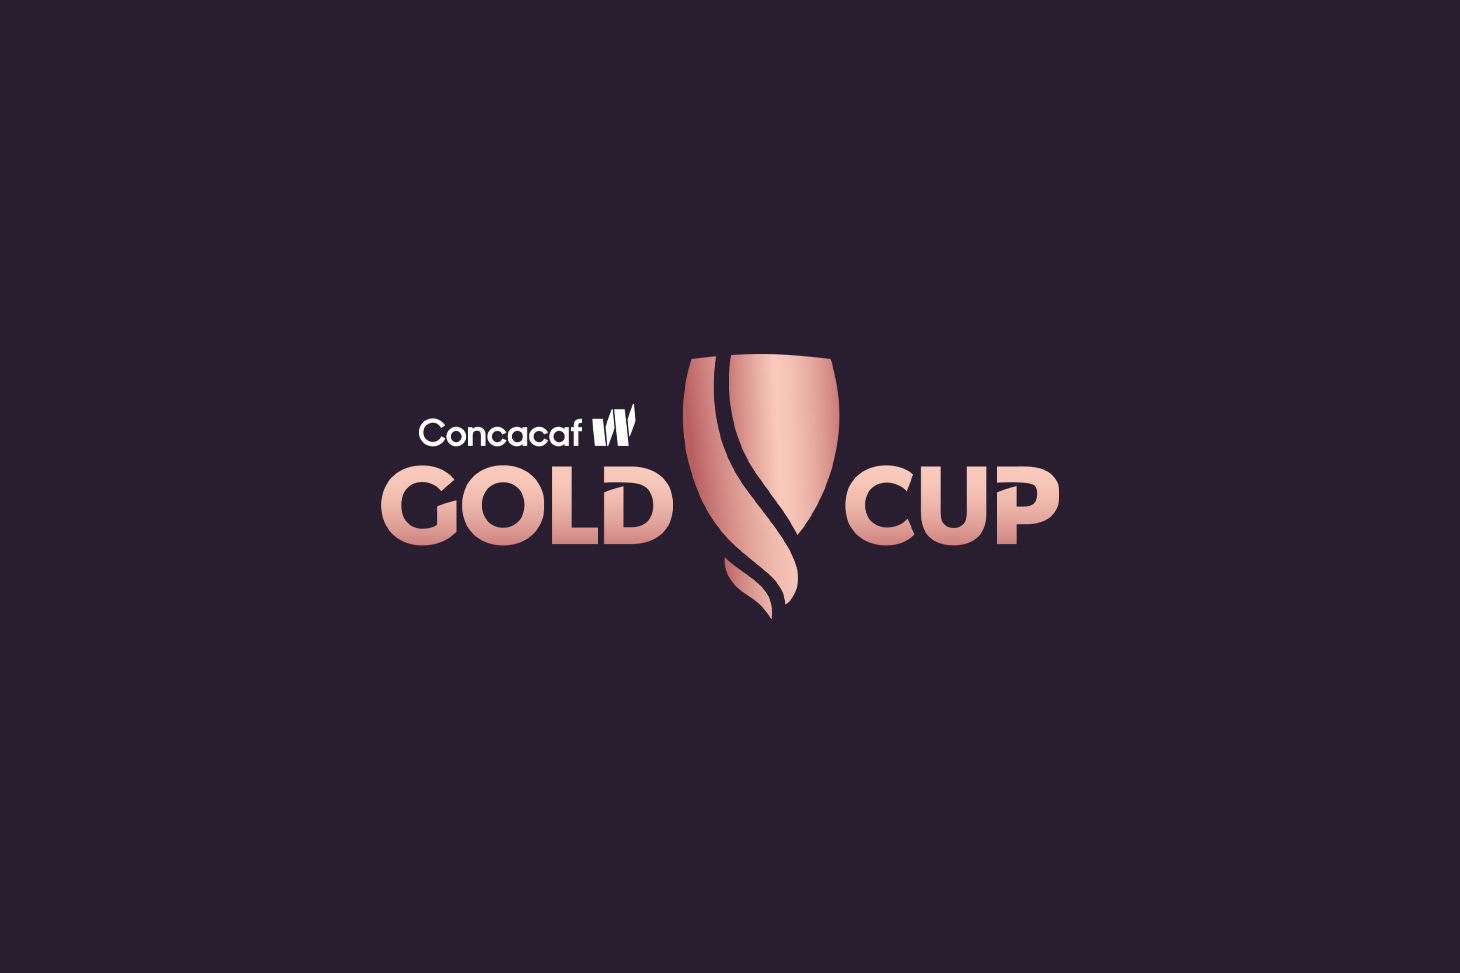 Concacaf anuncia fechas y formato para la edición inaugural de la Copa Oro Concacaf W